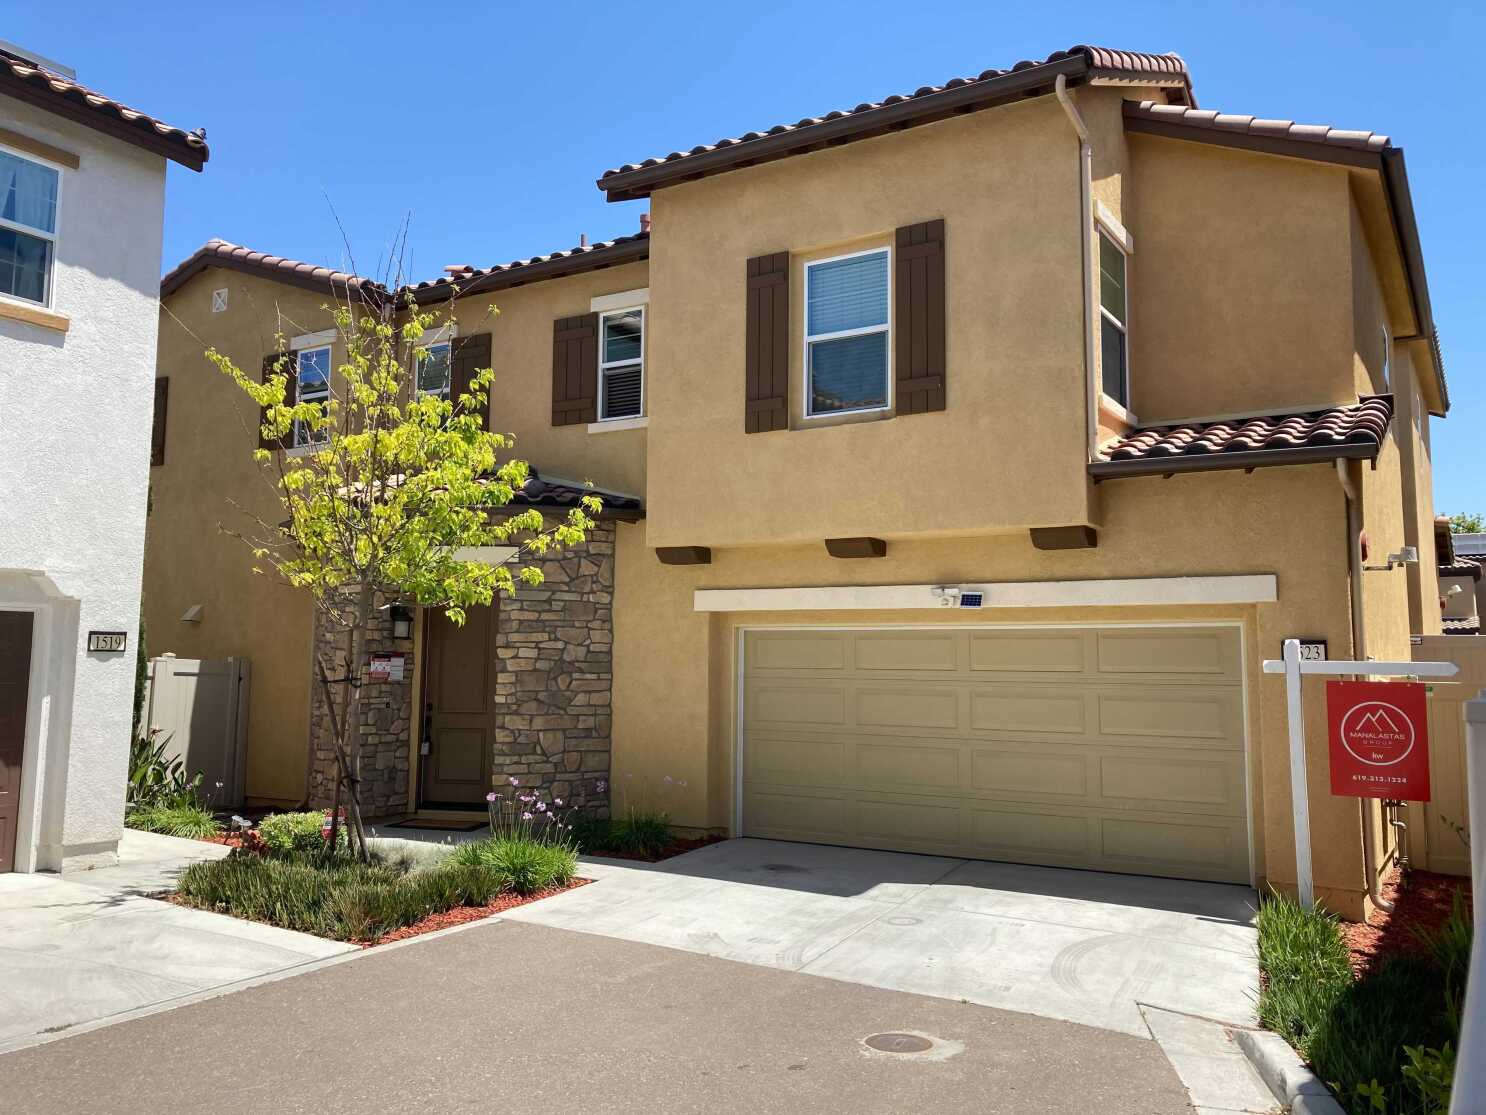 El precio de la vivienda en San Diego alcanza un récord de 725 mil dólares,  el aumento más rápido en casi 8 años - San Diego Union-Tribune en Español